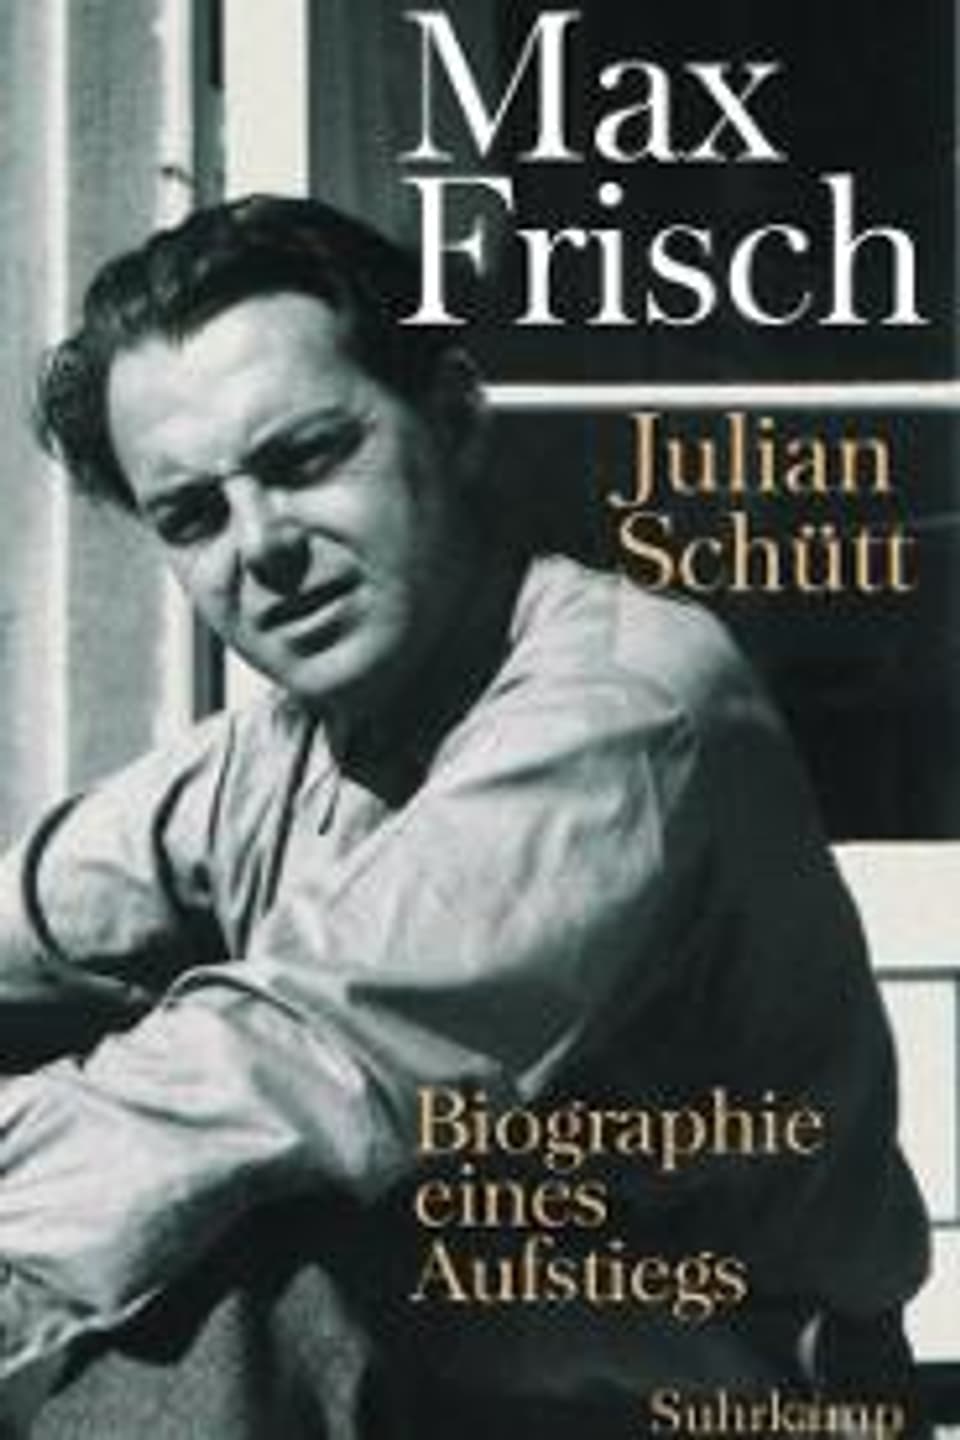 Buchcover: Julian Schütts Biografie der frühen Frisch-Jahre.